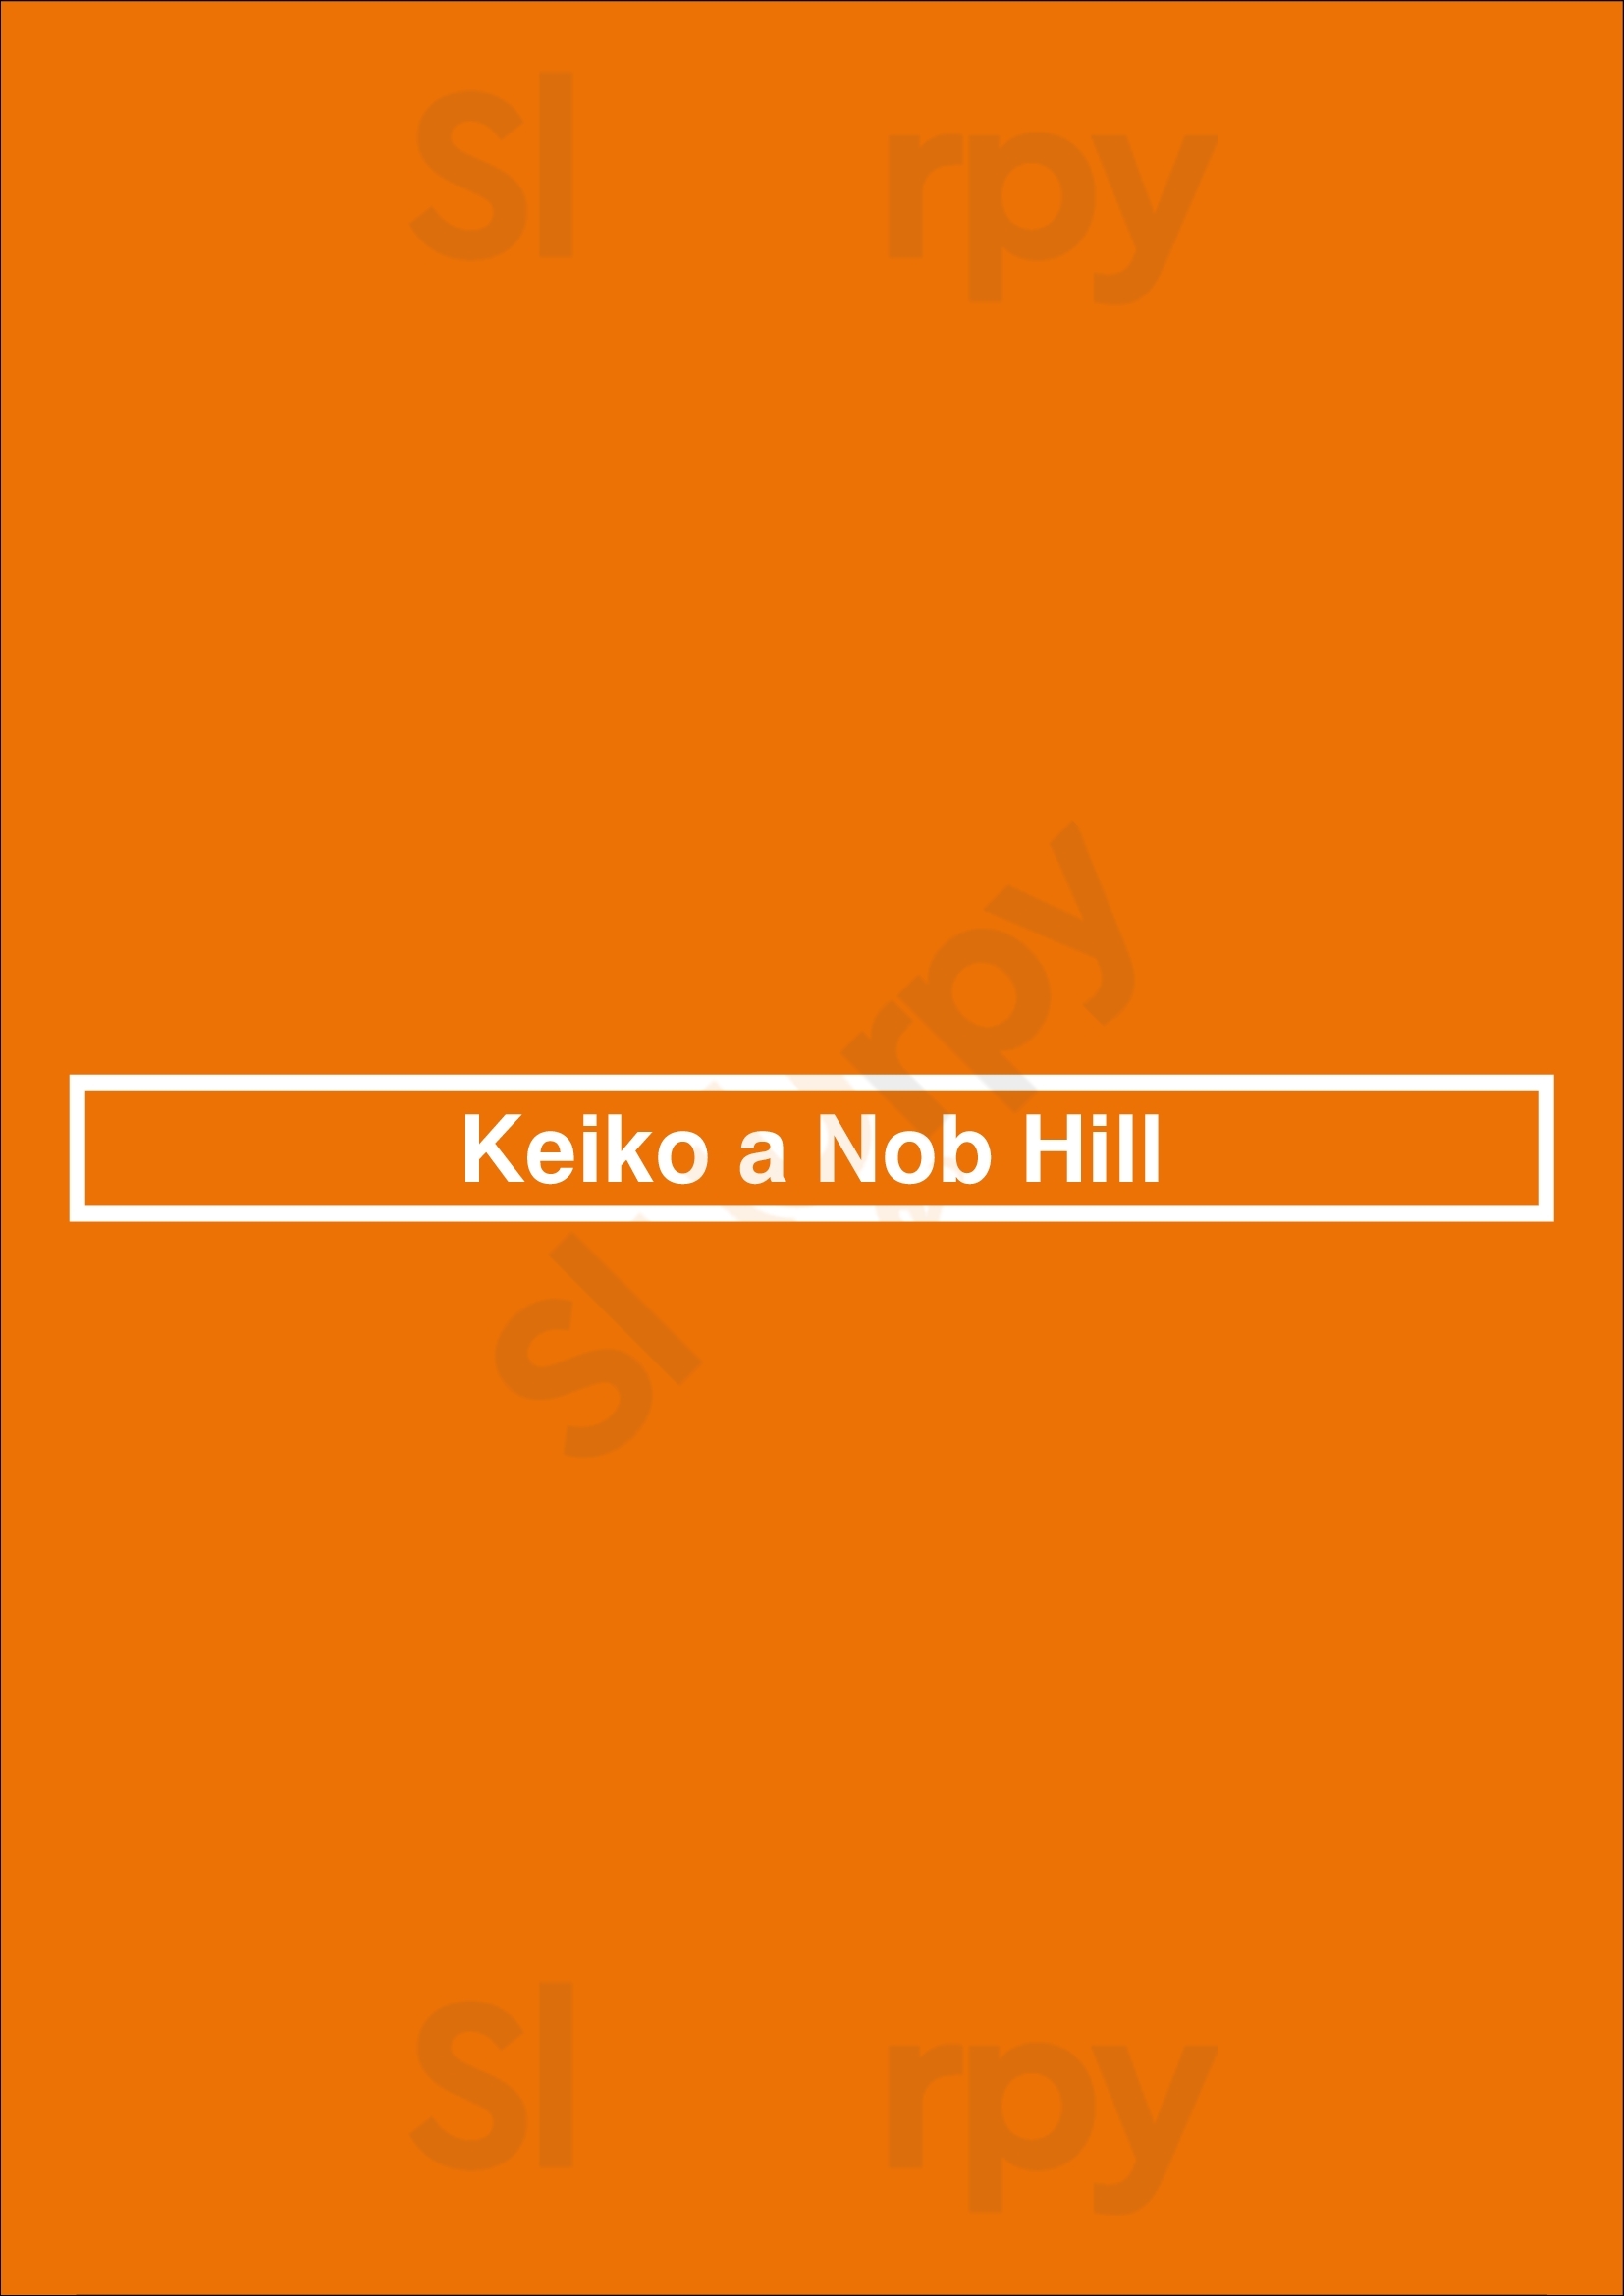 Keiko A Nob Hill San Francisco Menu - 1